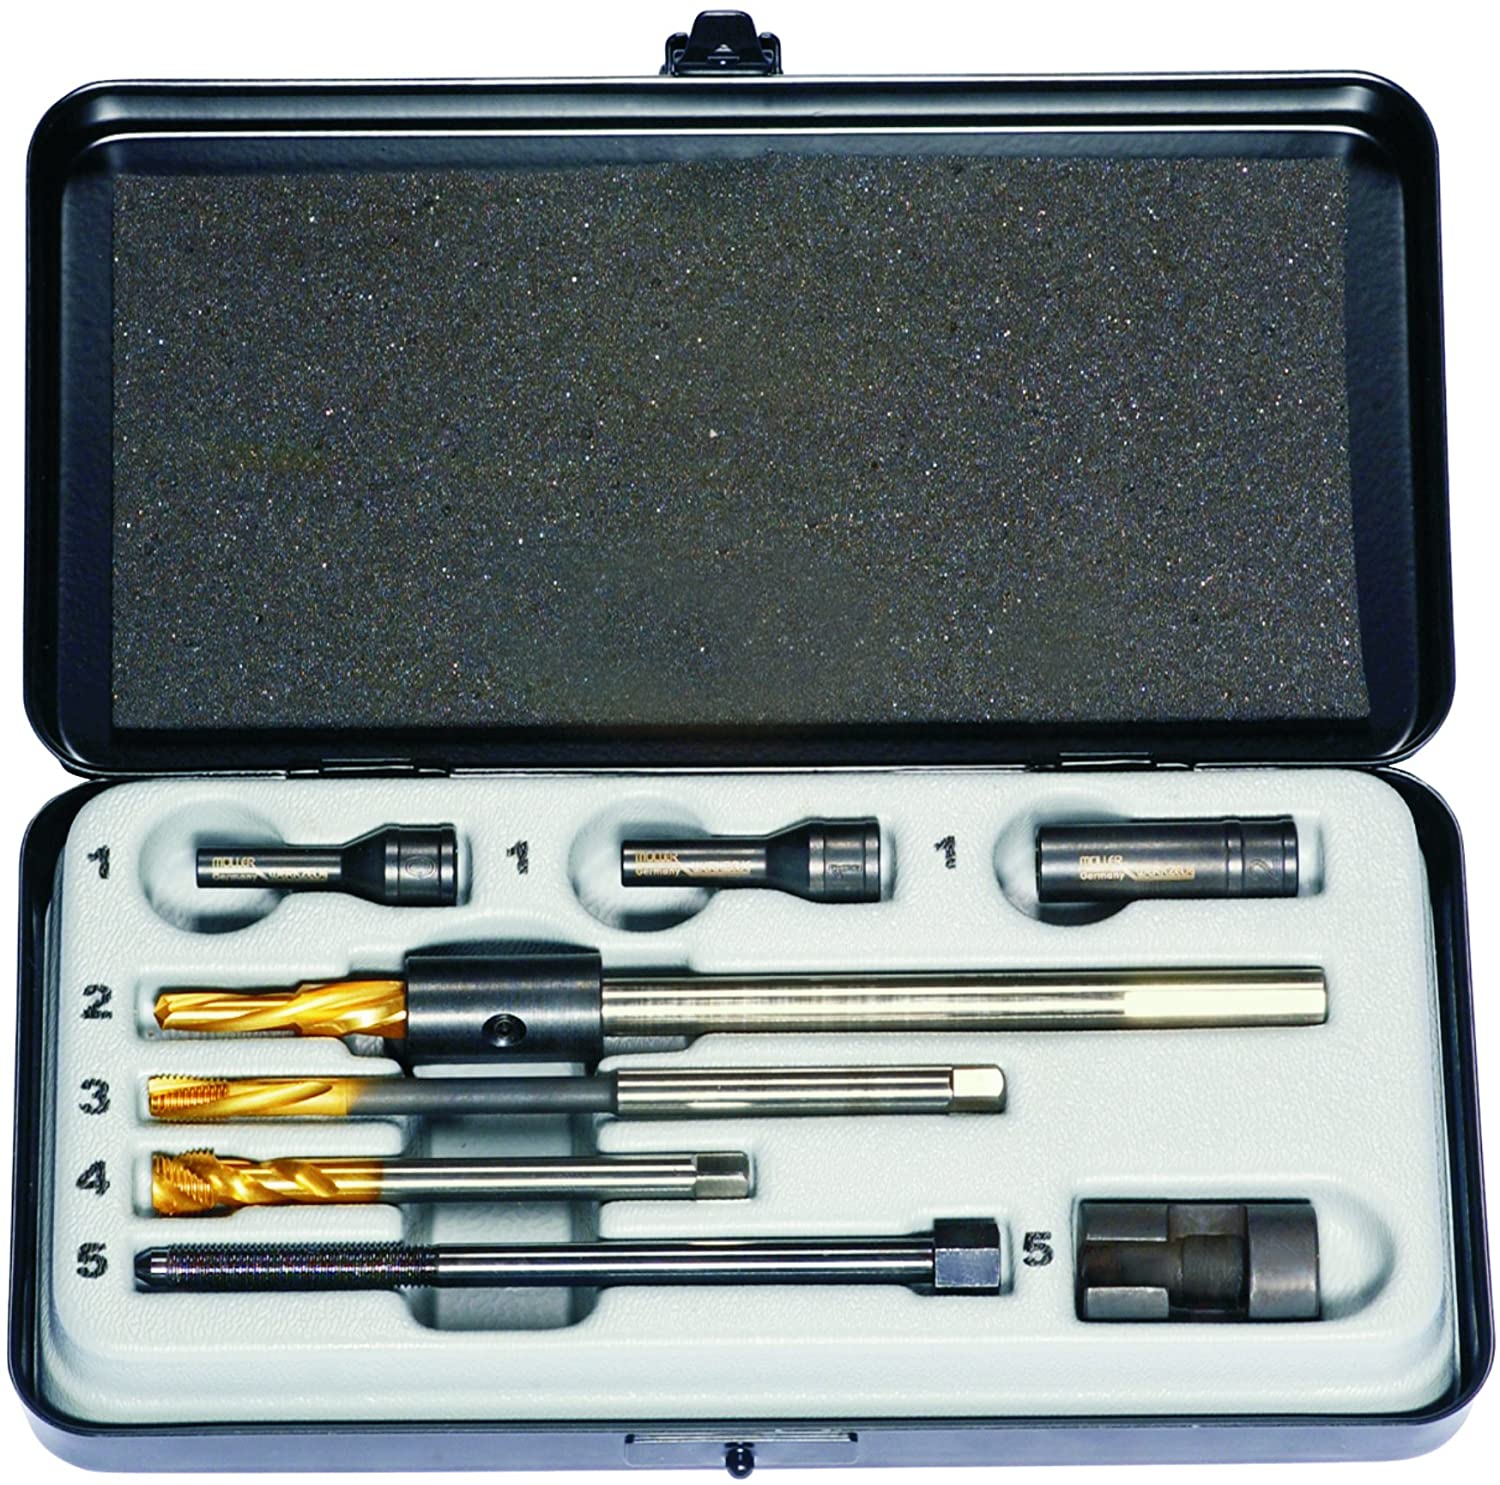 Mueller-Kueps 600 248 Glow Plug Drill Kit (M8 x 1)